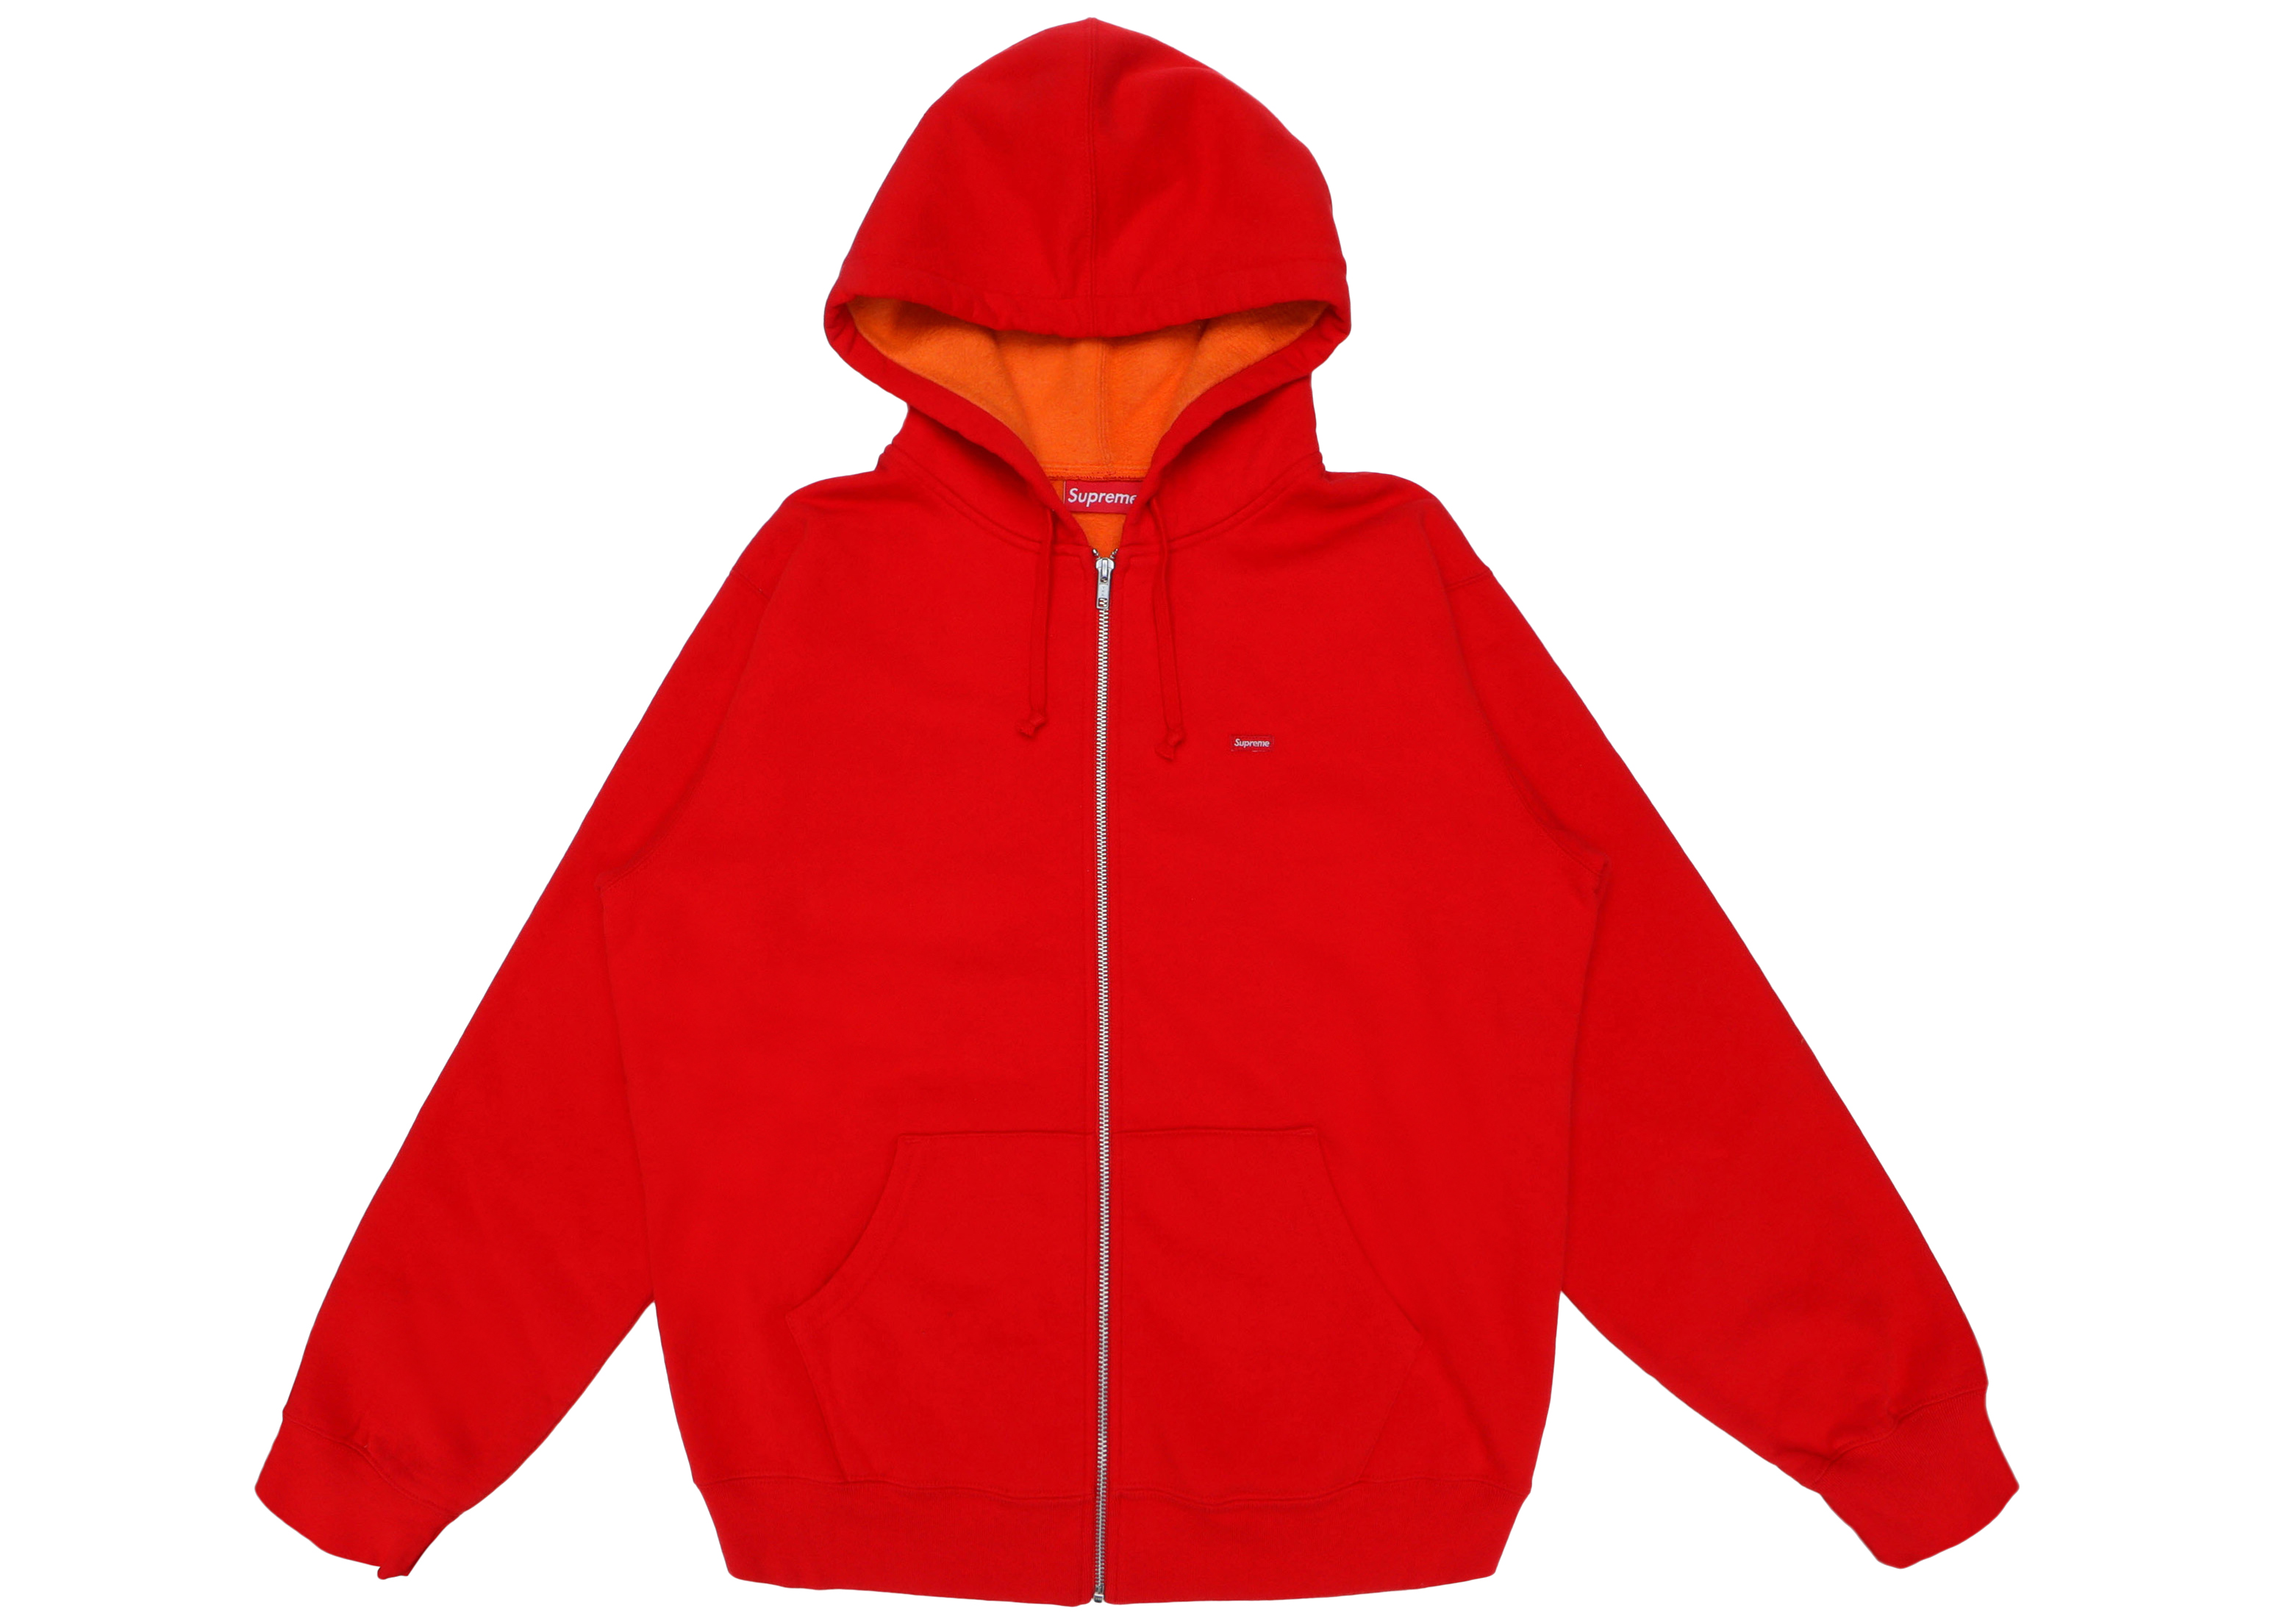 Supreme Contrast Zip Up Hooded Sweatshirt Red